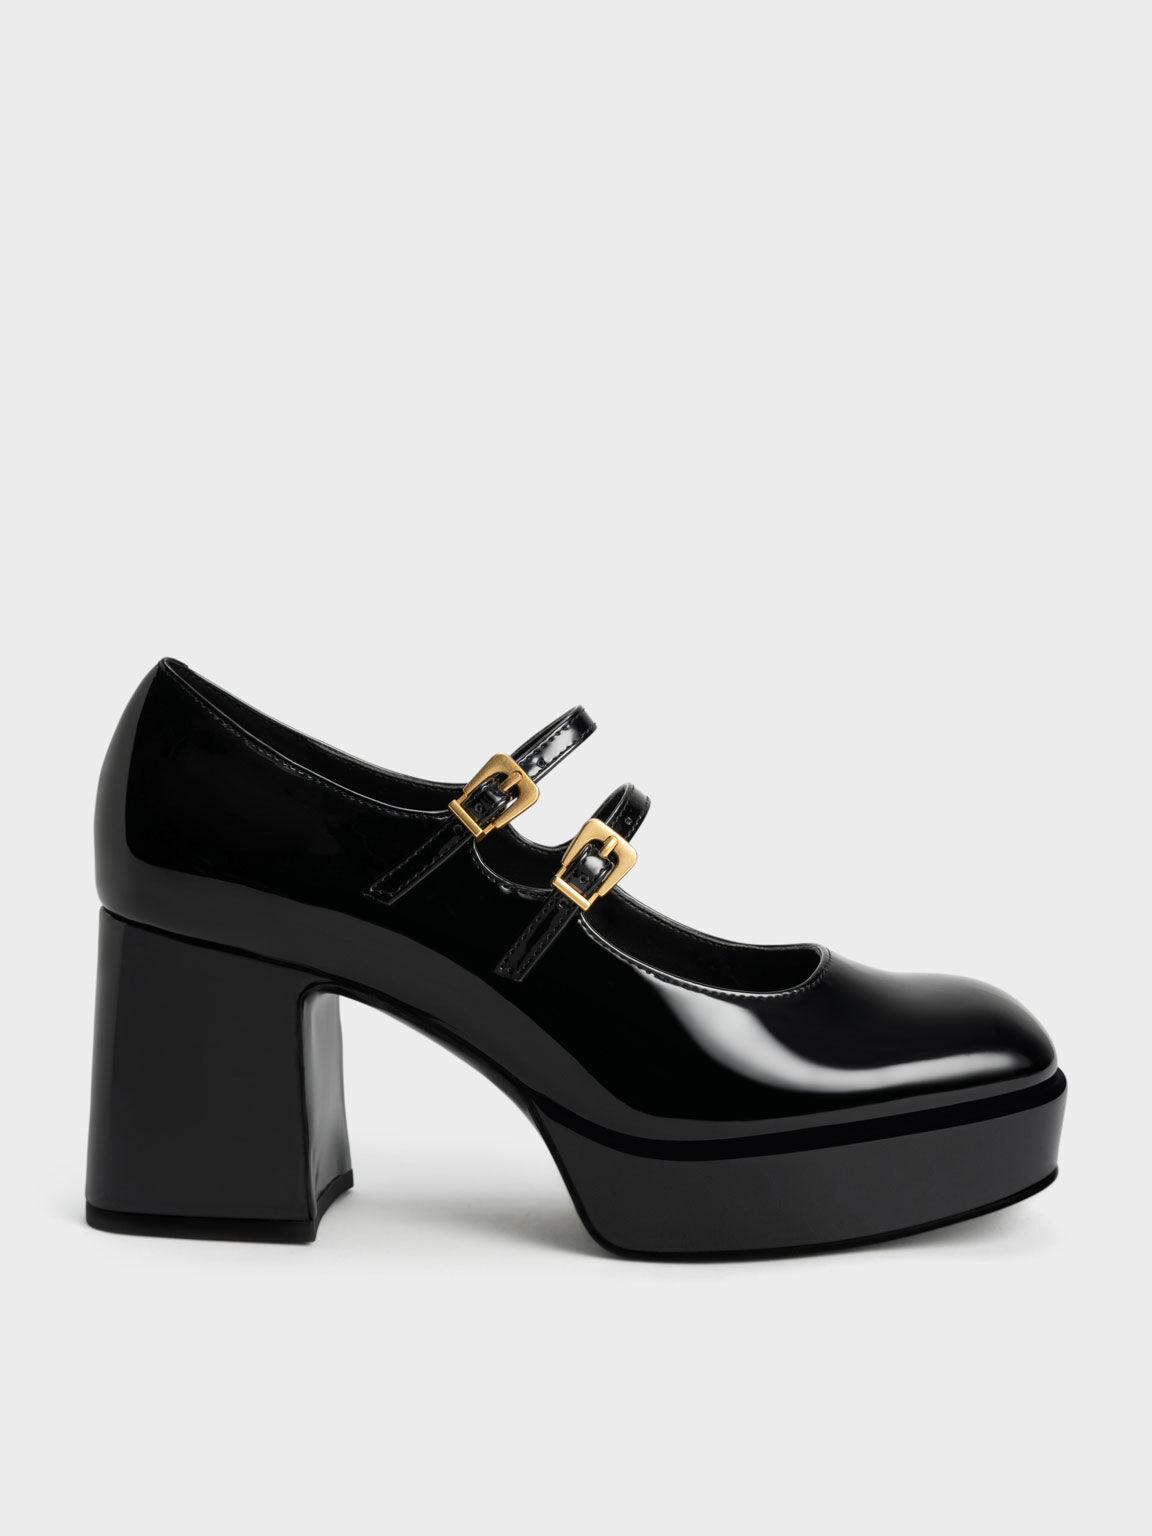 ALICE Beige patent leather Mary Janes pumps | Carel Paris Shoes